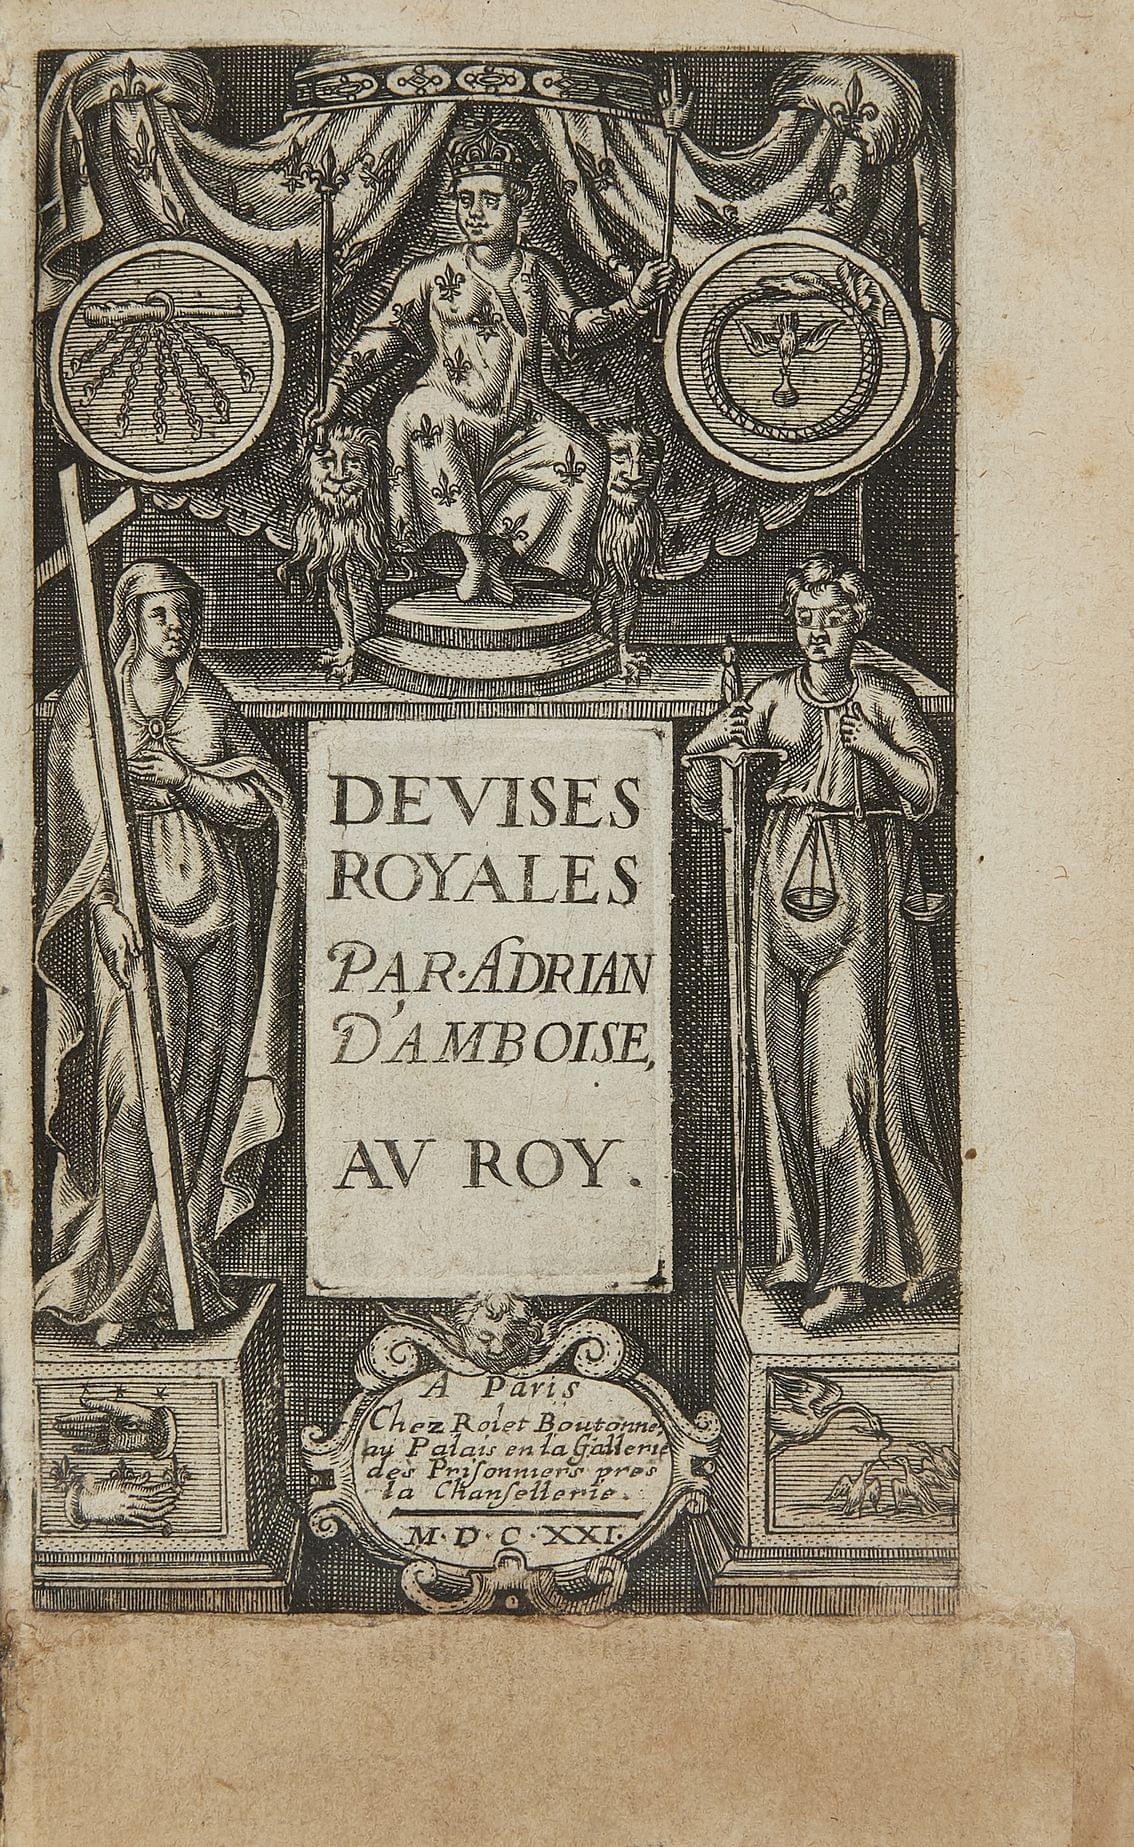 ADRIAN D'AMBOISE: Devises Royales. Paris, Rolet Boutonné, 1621; 